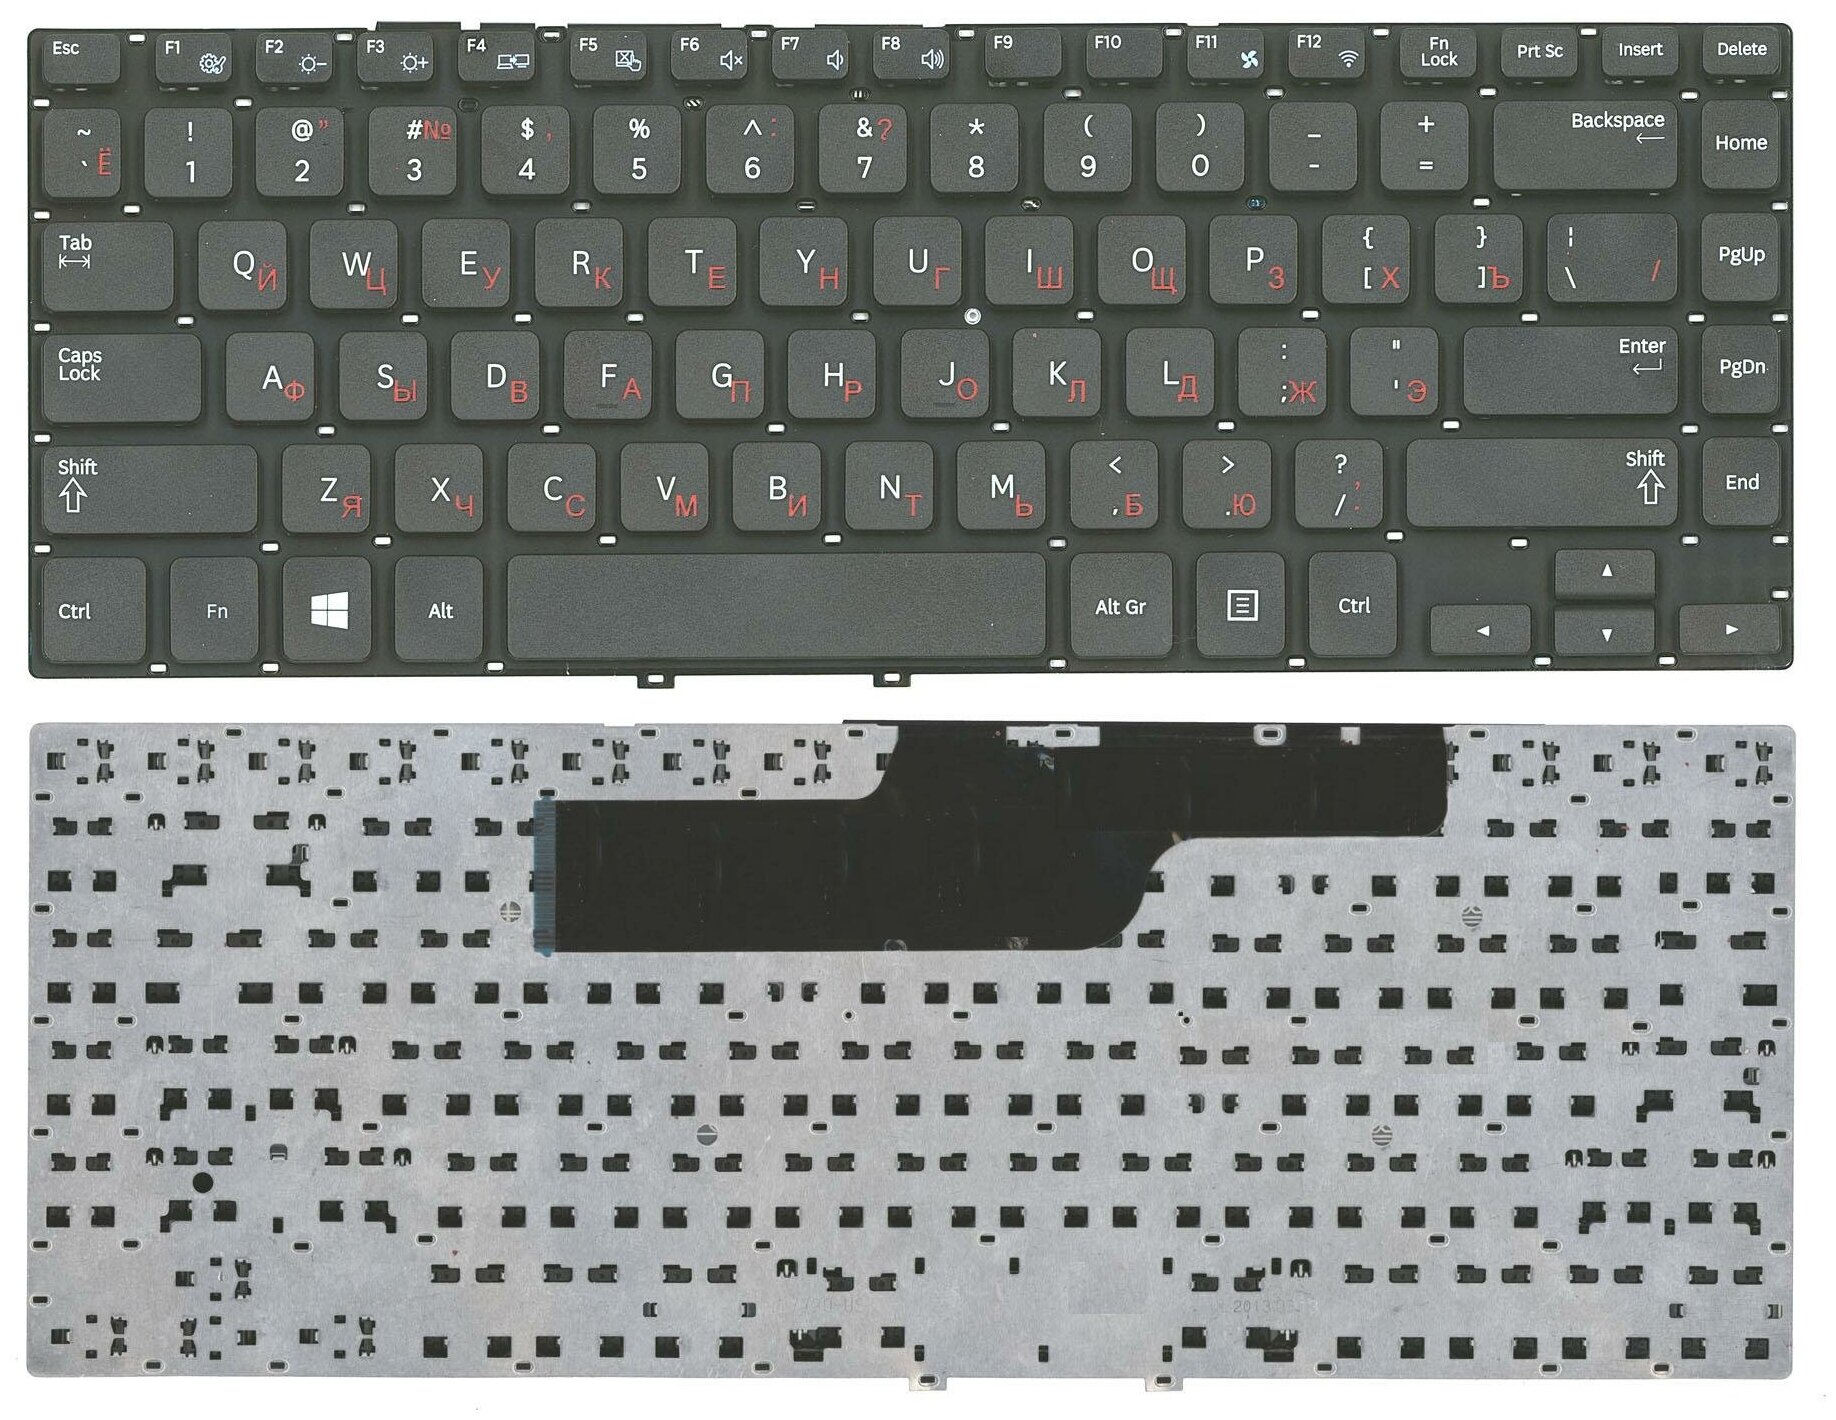 Клавиатура для ноутбука Samsung 355V4C-S01 черная